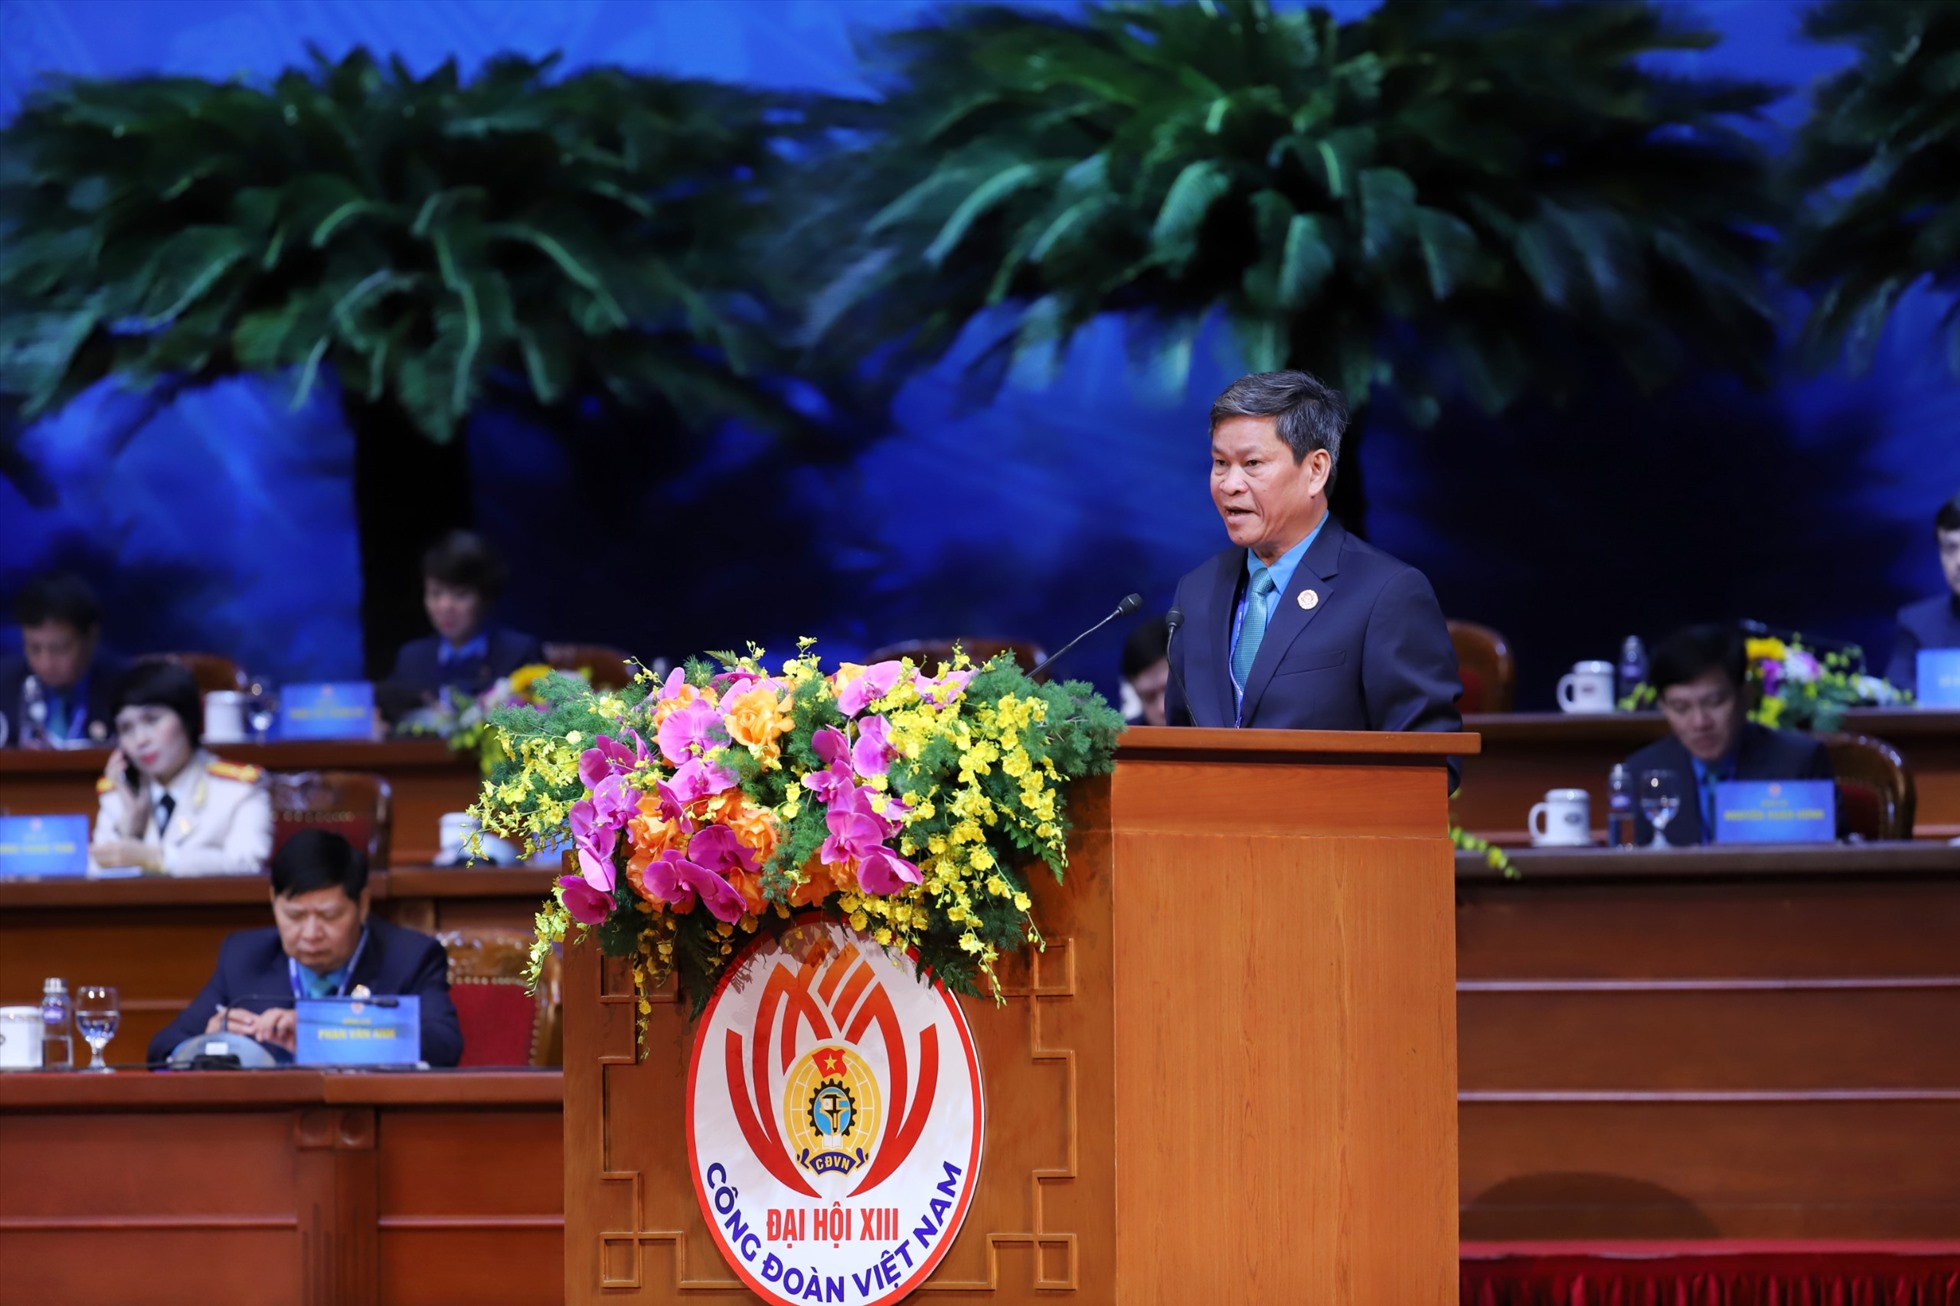 Ông Huỳnh Thanh Xuân, Phó Chủ tịch Tổng LĐLĐ Việt Nam trình bày báo cáo bổ sung, sửa đổi Điều lệ Công đoàn Việt Nam. Ảnh: Tô Thế